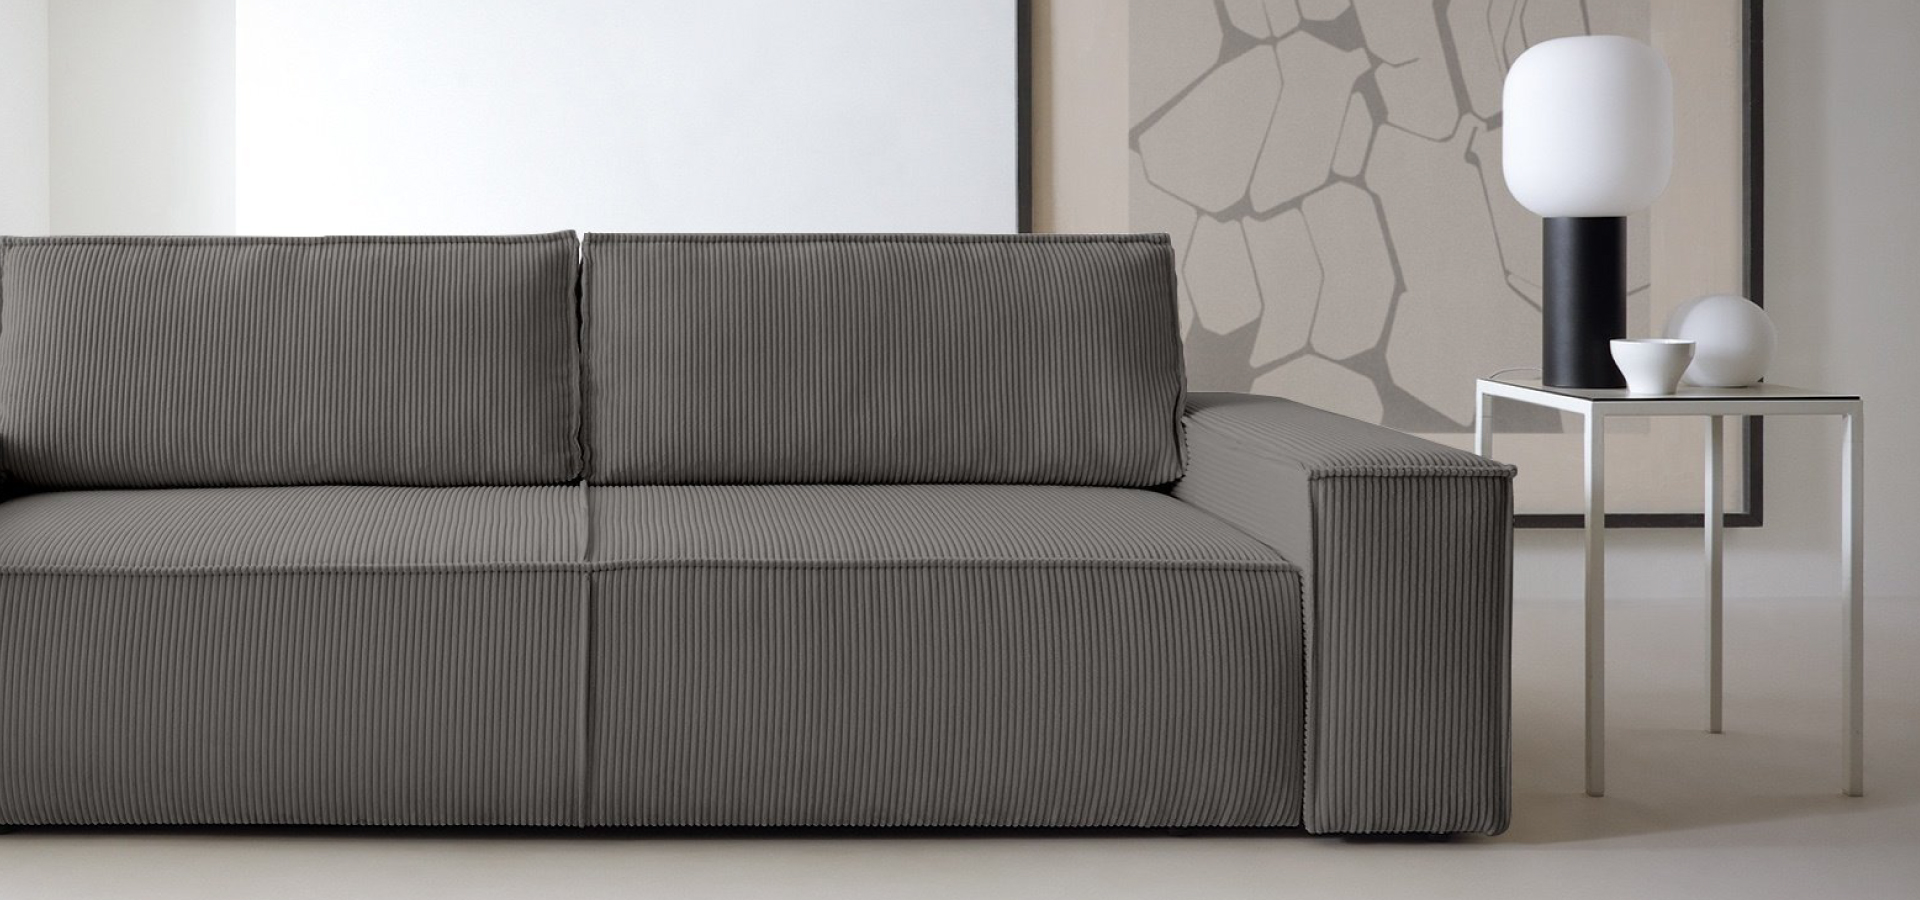 Ciemnoszara sofa w sztruksową tkaninę o bardzo prostej i geometrycznej formie. W tle duży, abstrakcyjny obraz, po prawej stronie sofy stolik pomocniczy oraz lampa stołowa na czarnej nodze.